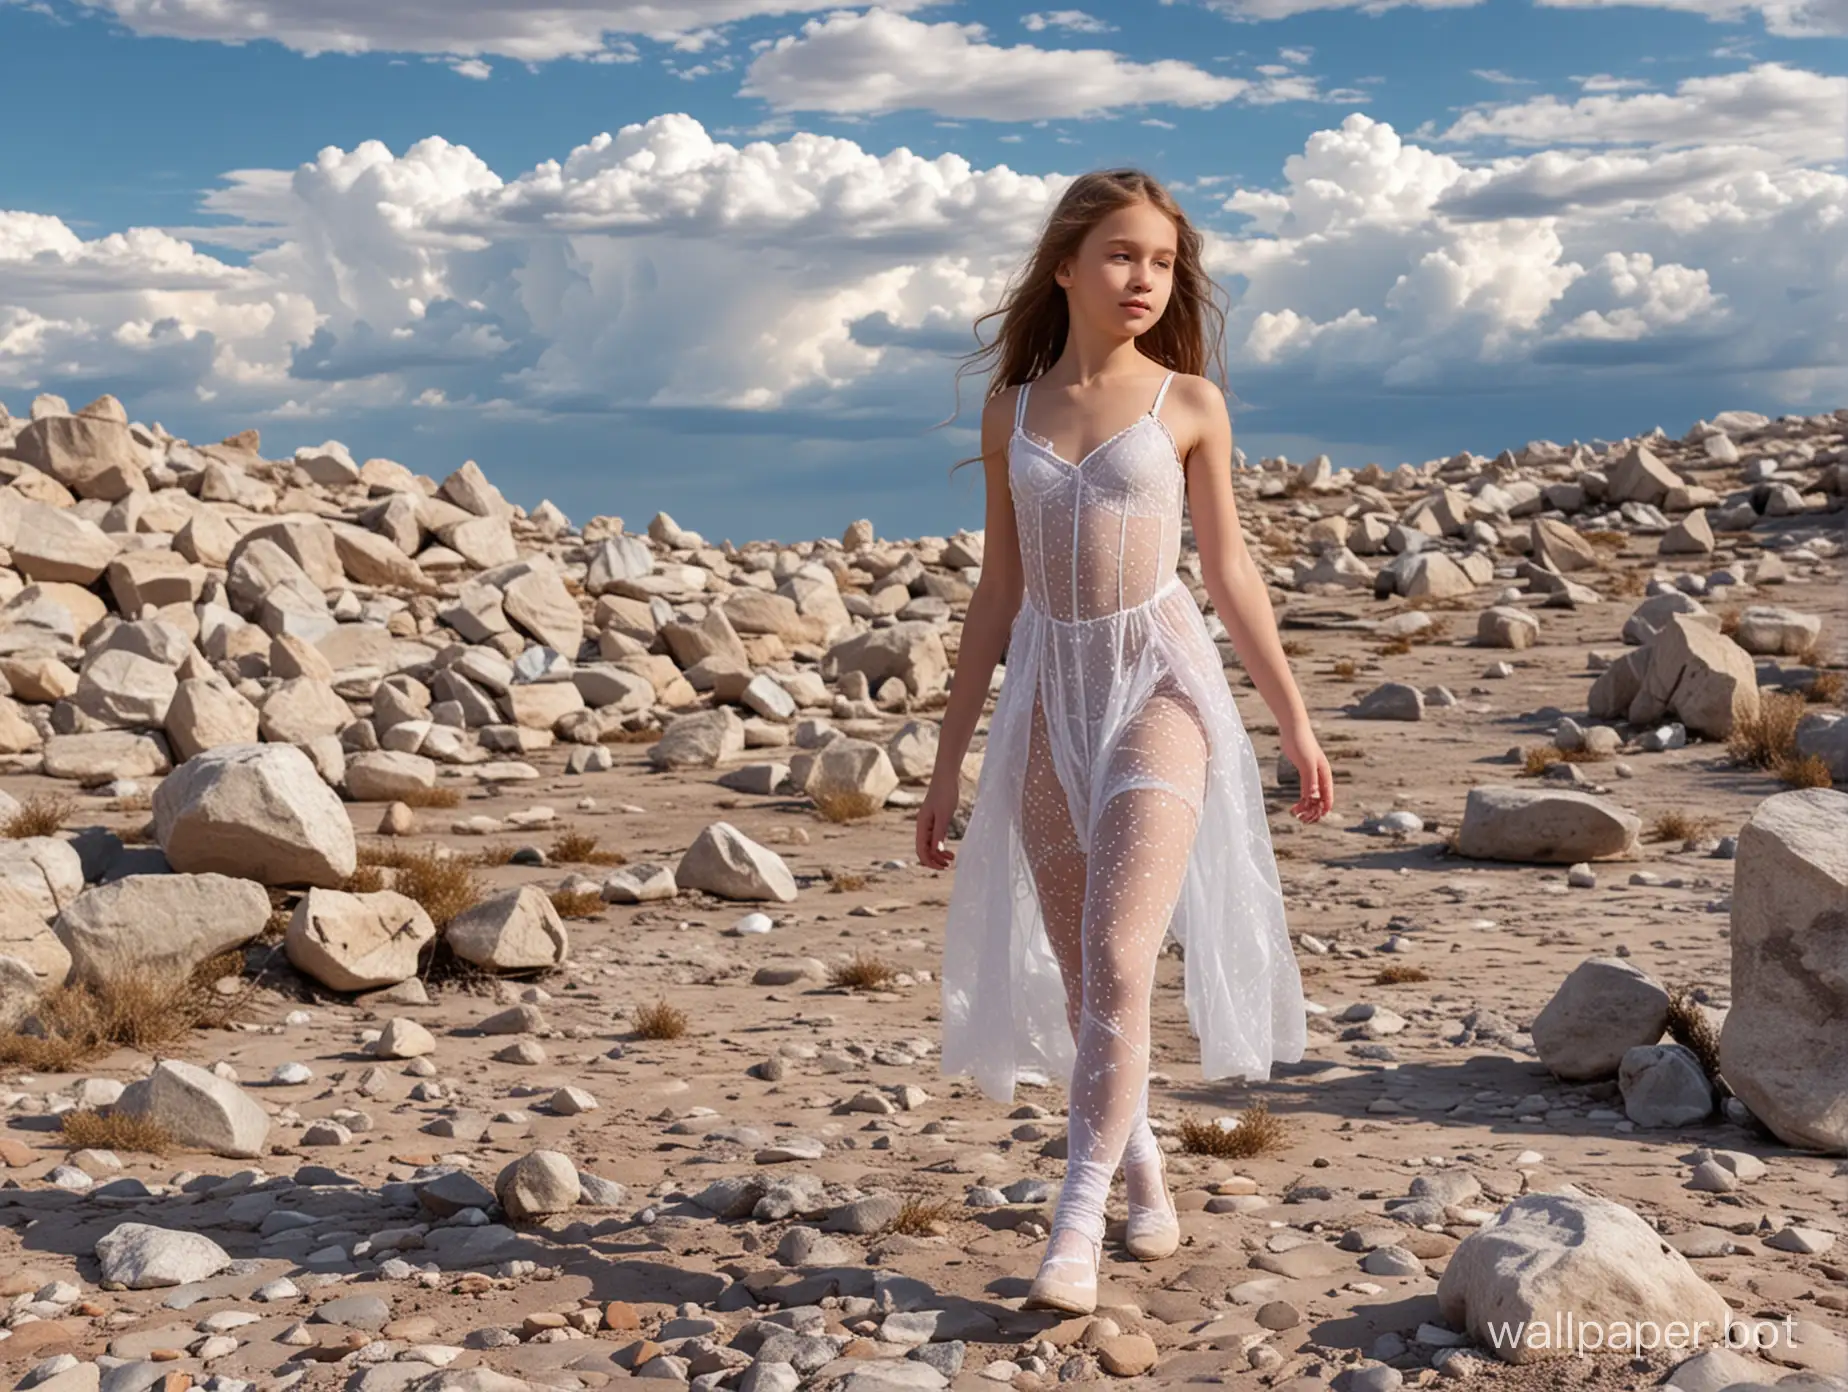 русская девочка 12 лет в красивом бодистокинг идёт по каменистой планете под нежно опаловым небом с белыми облаками